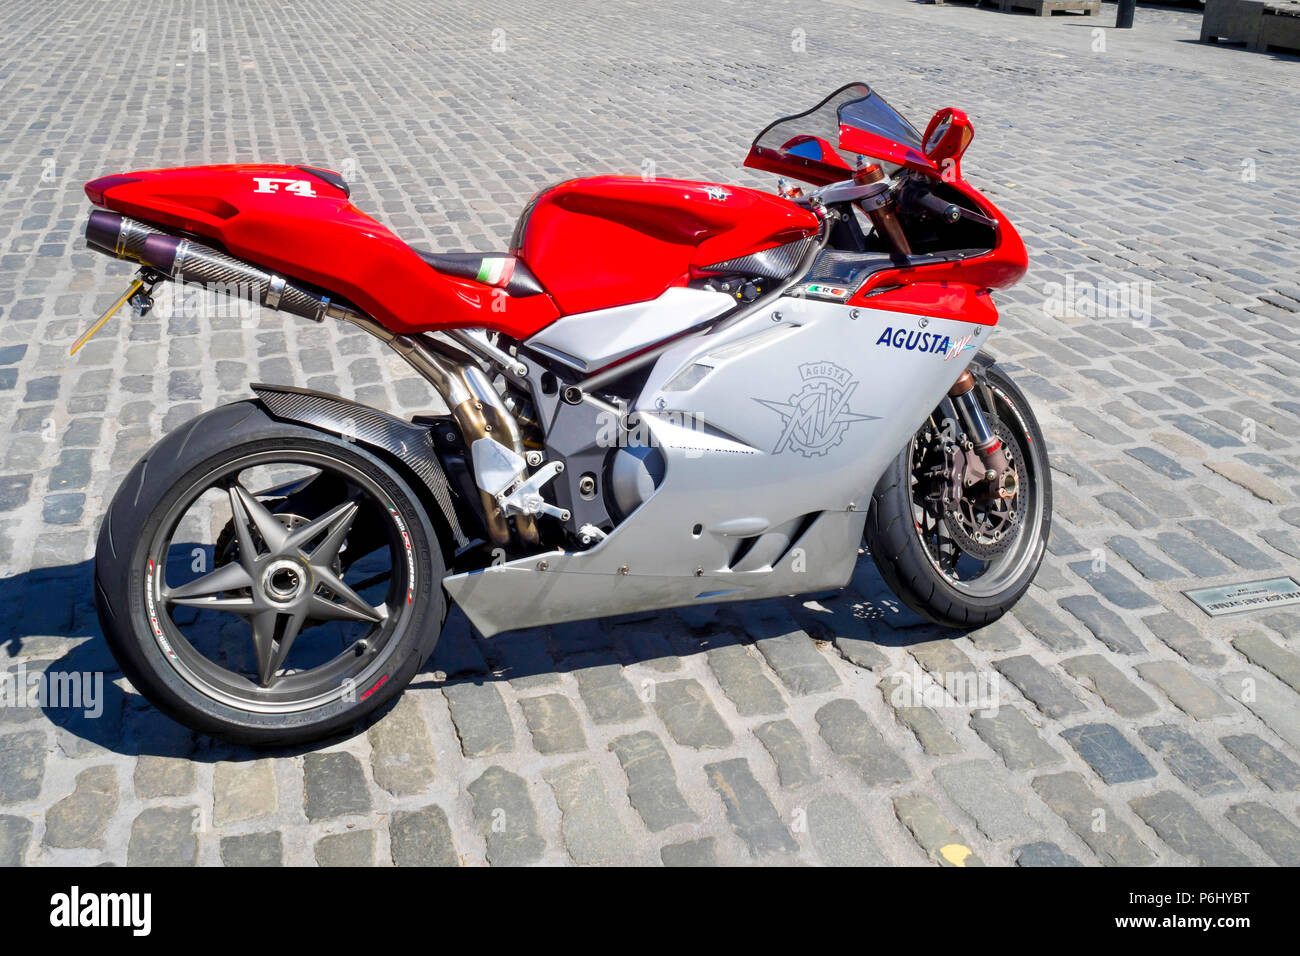 MV Agusta F4 motocicletta sportiva parcheggiata su una piazza in ciottoli nella luce del sole Foto Stock